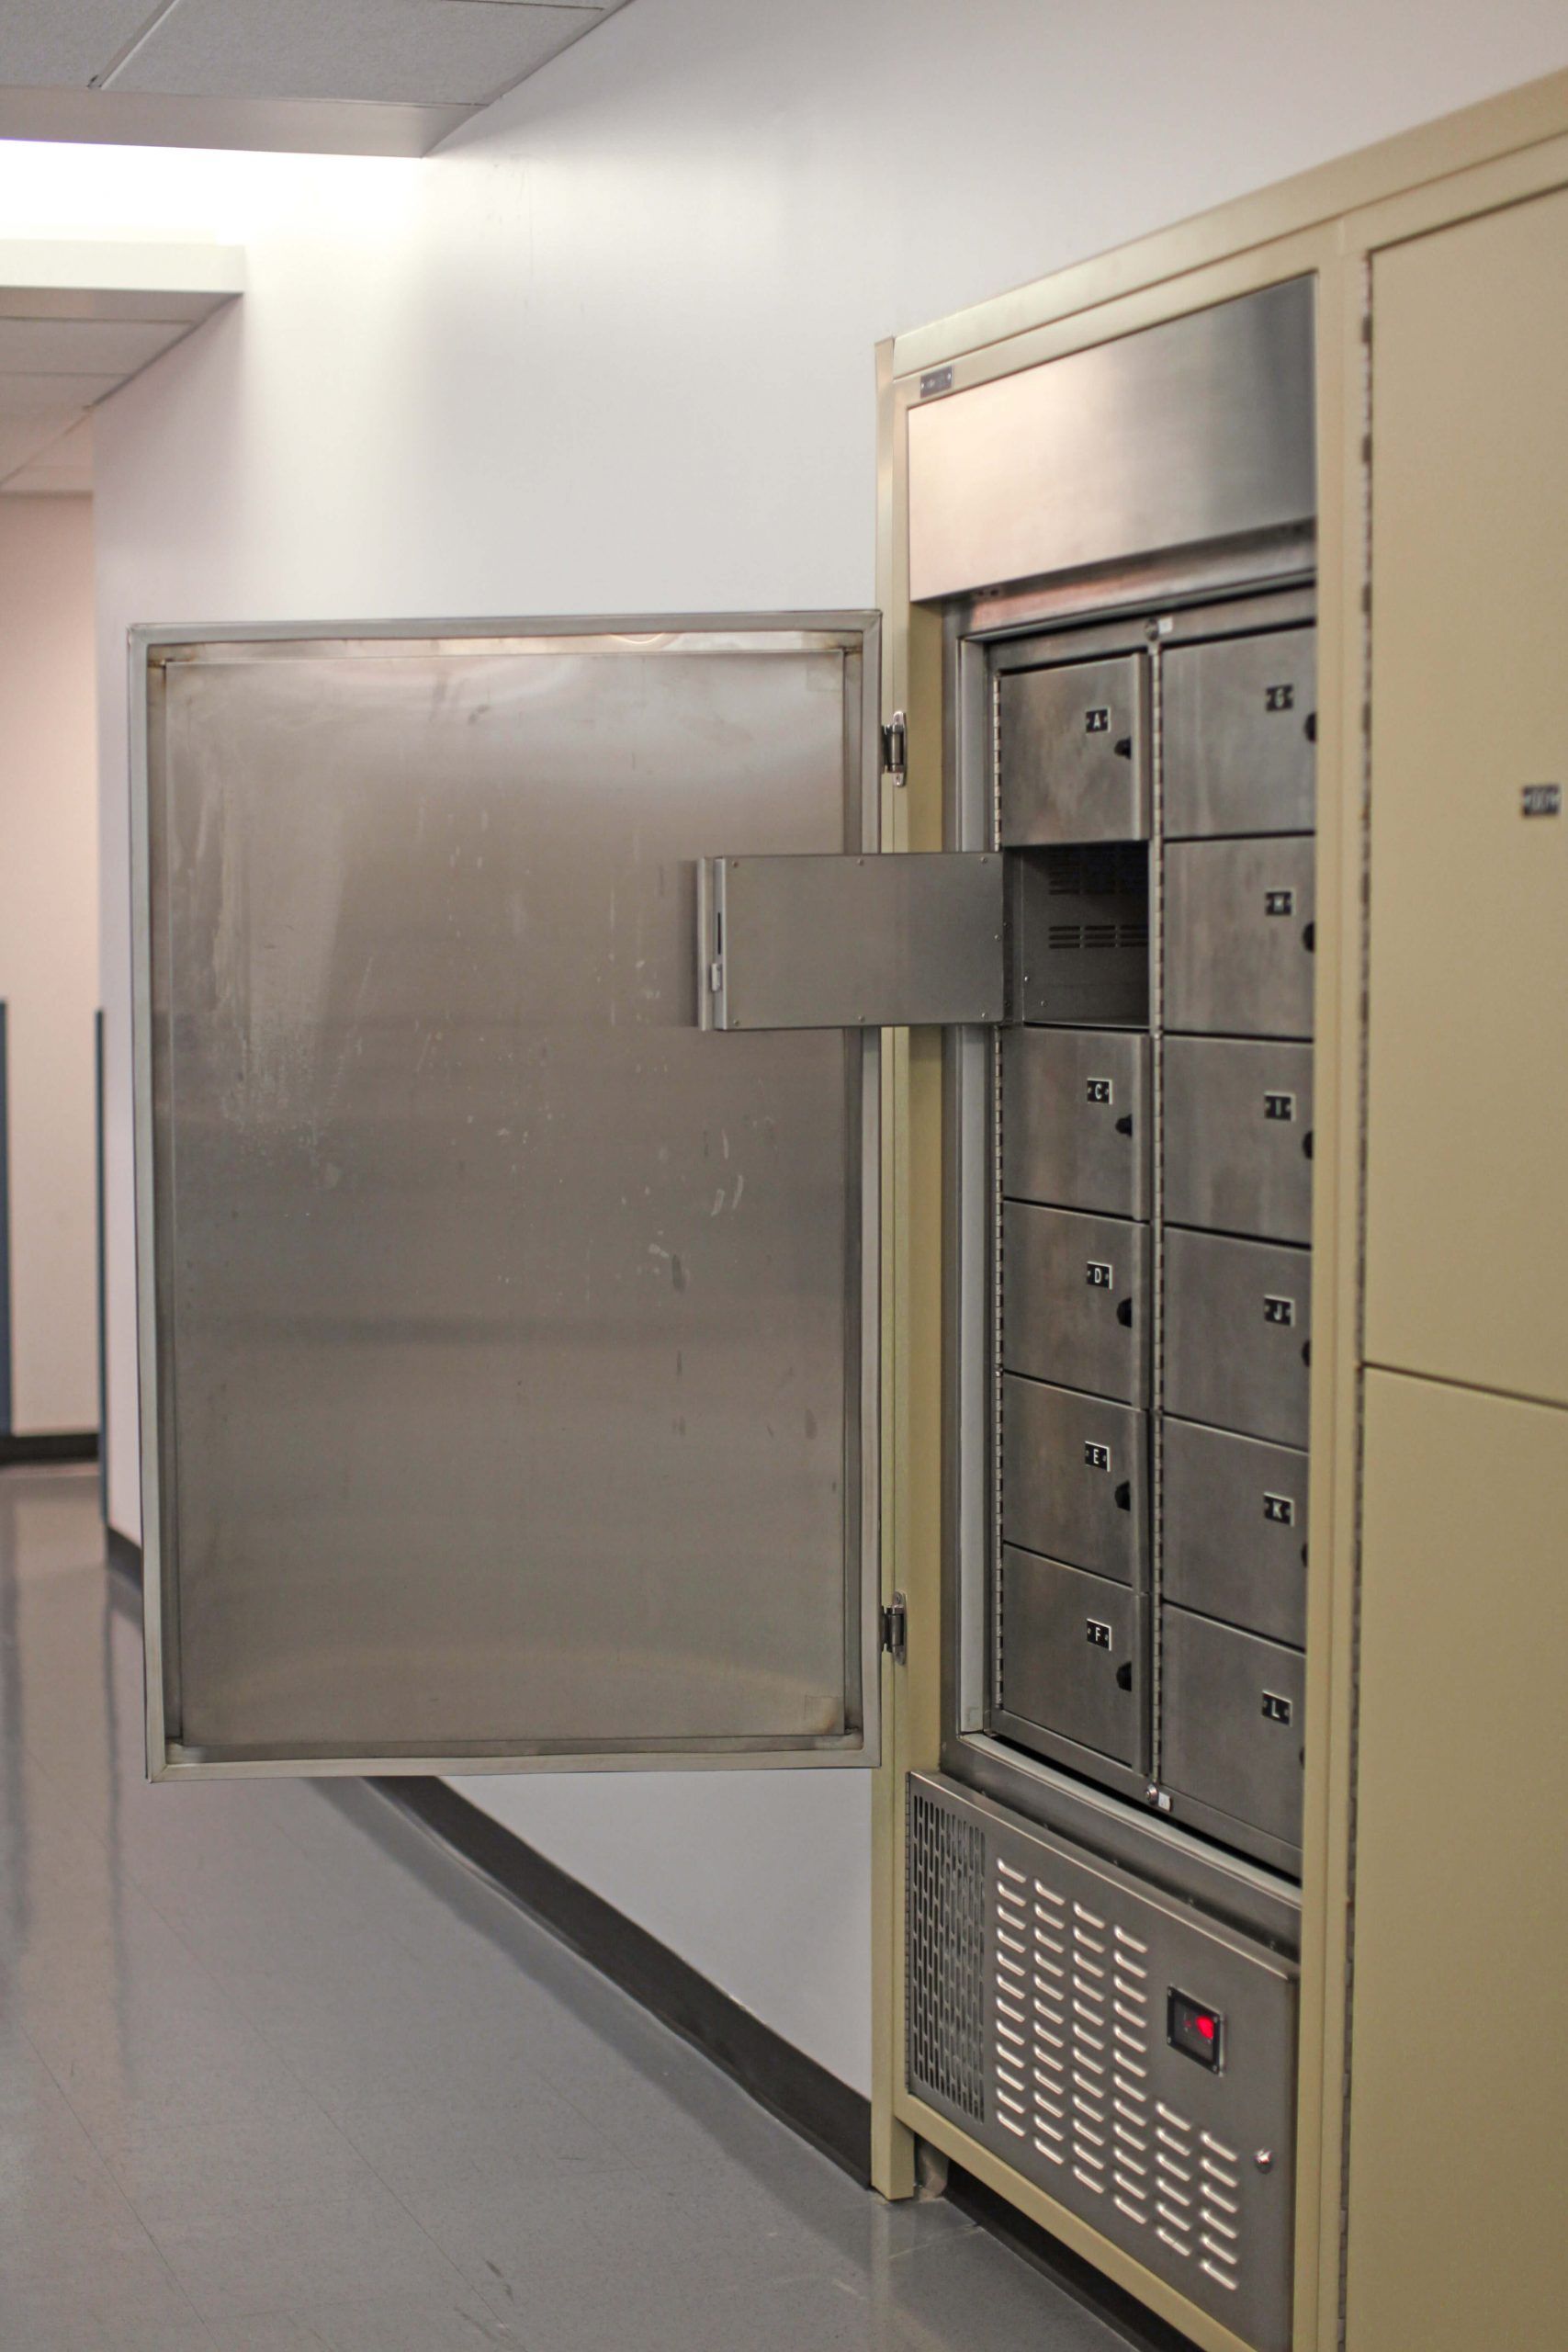 temporary evidence storage evidence locker